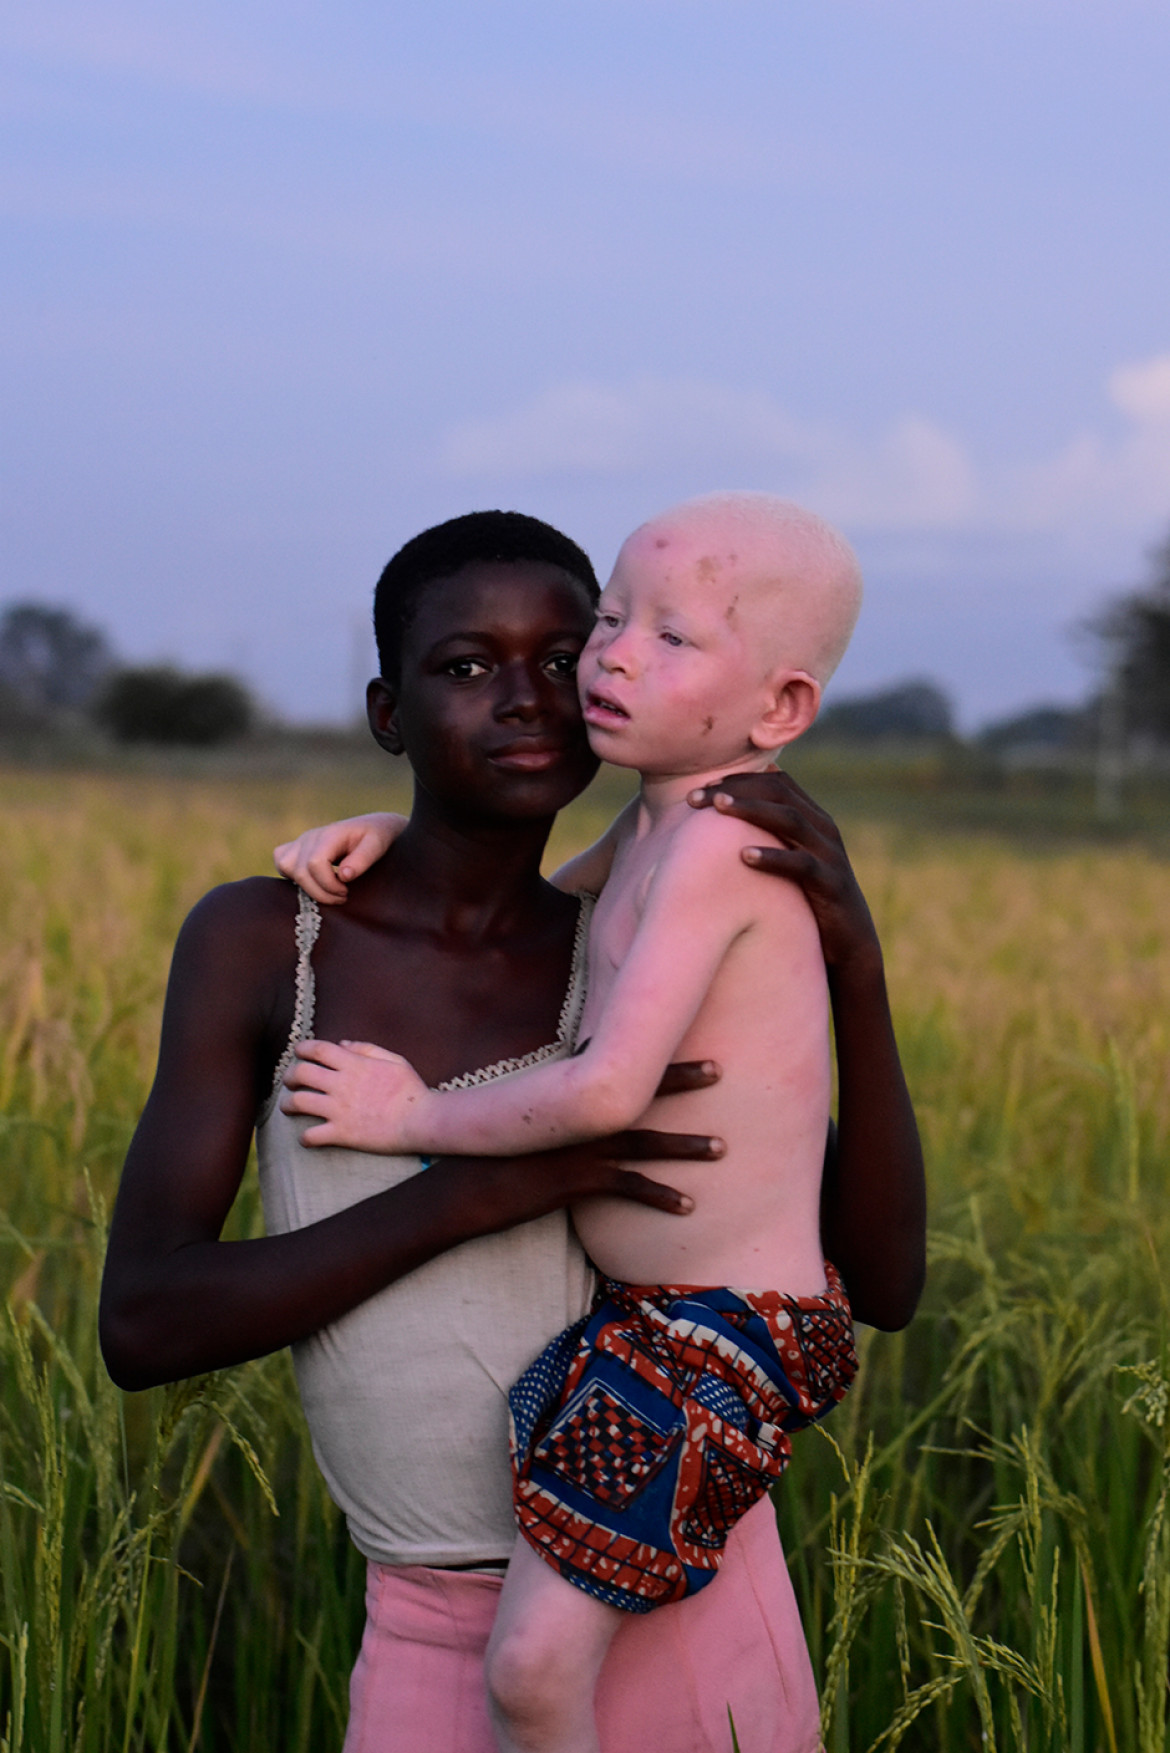 fot. Sara De Antonio Feu, "Ayimpoka", 1. miejsce w kategorii pojedynczej Next Genration Award.<br>/<br><br>/<br>Ayimpoka mieszka ze swoją rodziną w niewielkim mieście Bolgatanga w Ghanie. Albinizm w Afryce od lat jest powodem dyskryminacji i prześladowań. Dzięci dotknięte tą przypadłością są często mordowane ze względu na przypisywany im związek z magią i czarami. Dziewczynka jest pod stałą ochroną swojej rodziny oraz organizacji NGO. W dniu, w którym zrobiono zdjęcie Ayimpoka walczyła z malarią i poparzeniami słonecznymi.